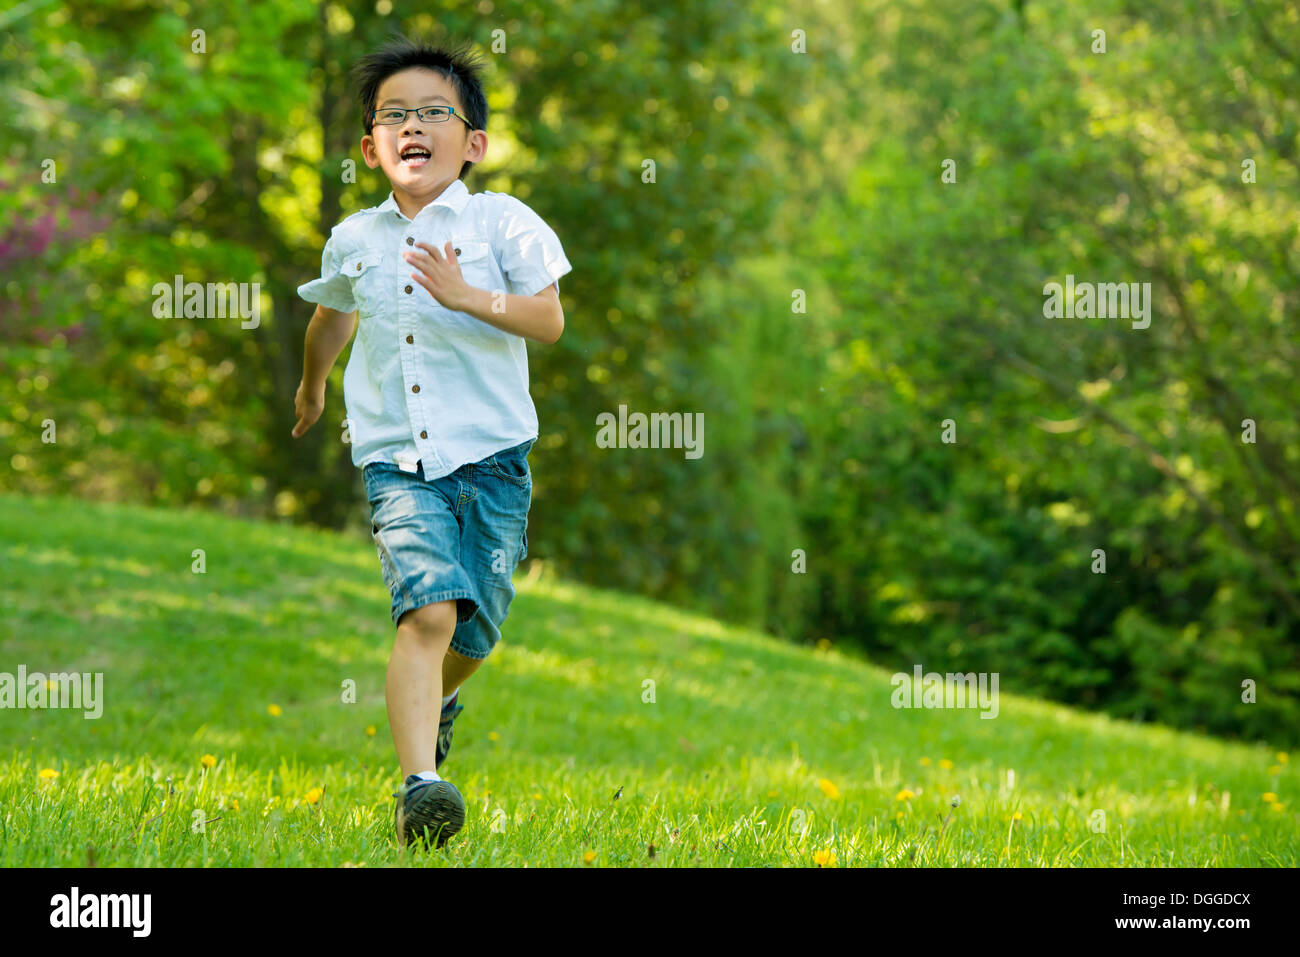 Junge läuft auf Rasen Stockfoto